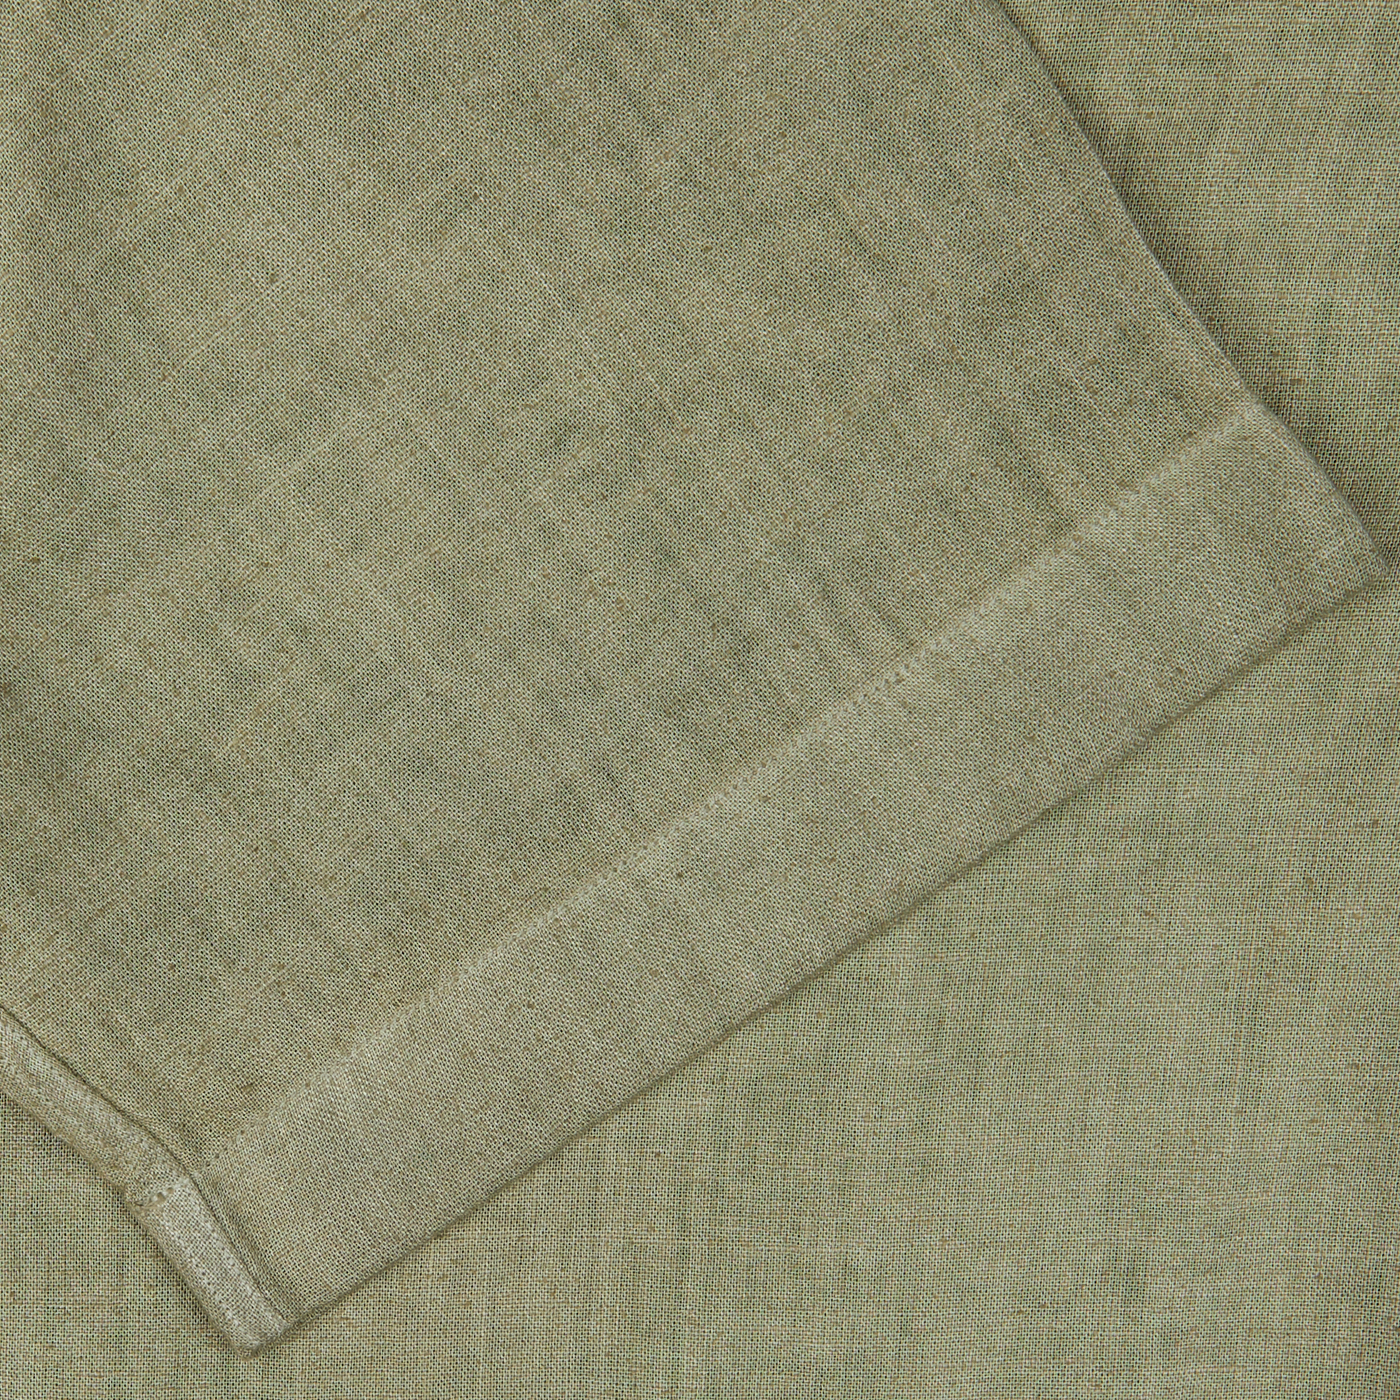 Close-up of a folded Altea Moss Green Linen Blend Camp Collar Shirt with a textured weave.